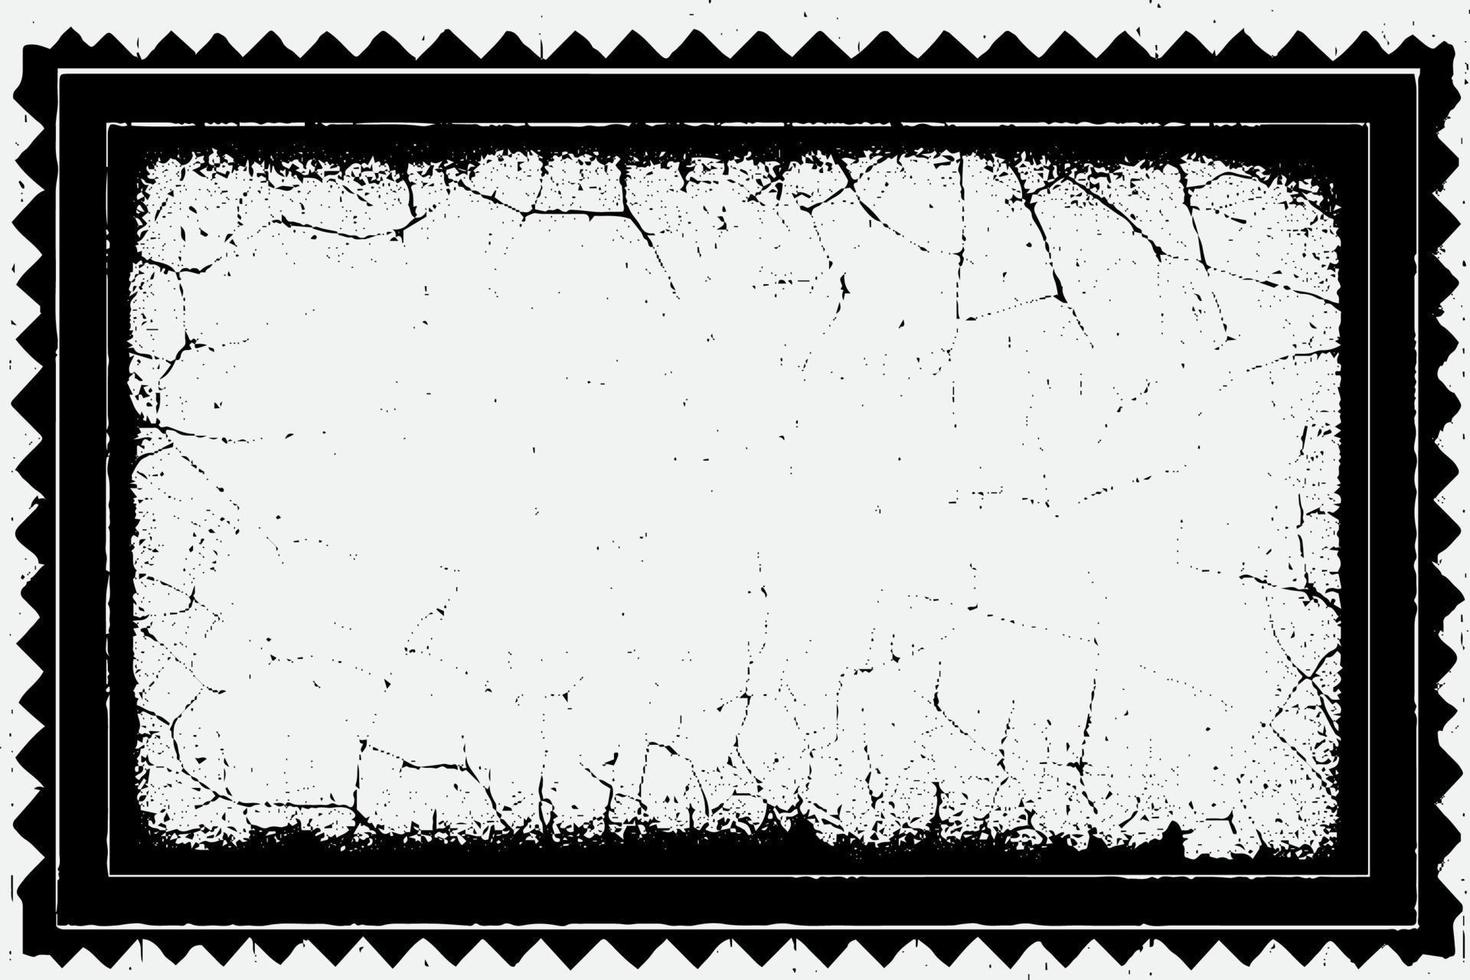 plein kader met grunge zwart inkt ornament in de omgeving van de randen, wit achtergrond in vector eps formaat.